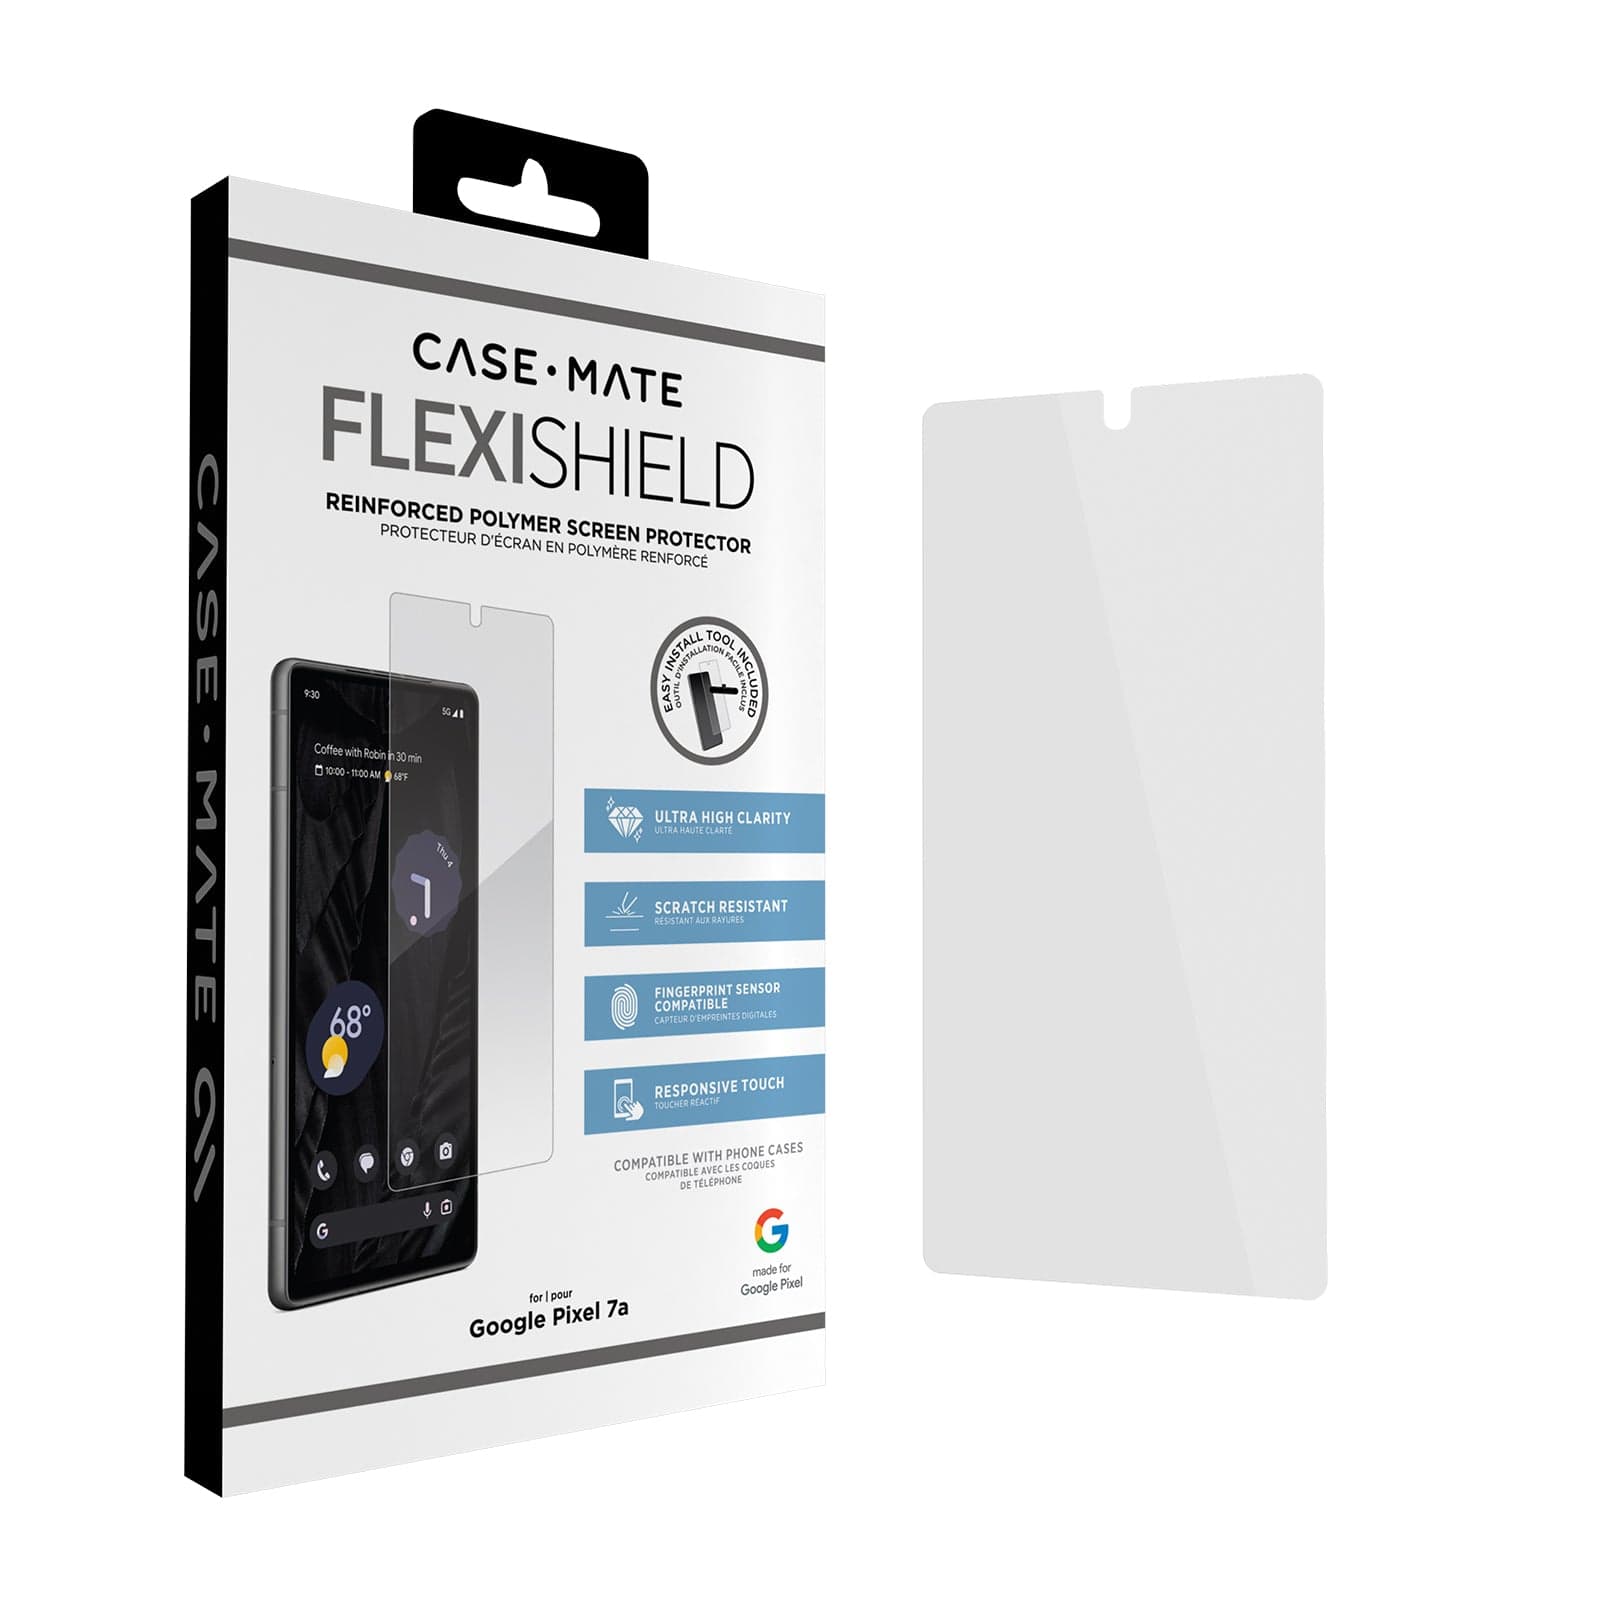 Case-Mate Google Pixel 7a FlexiShield Screen Protector